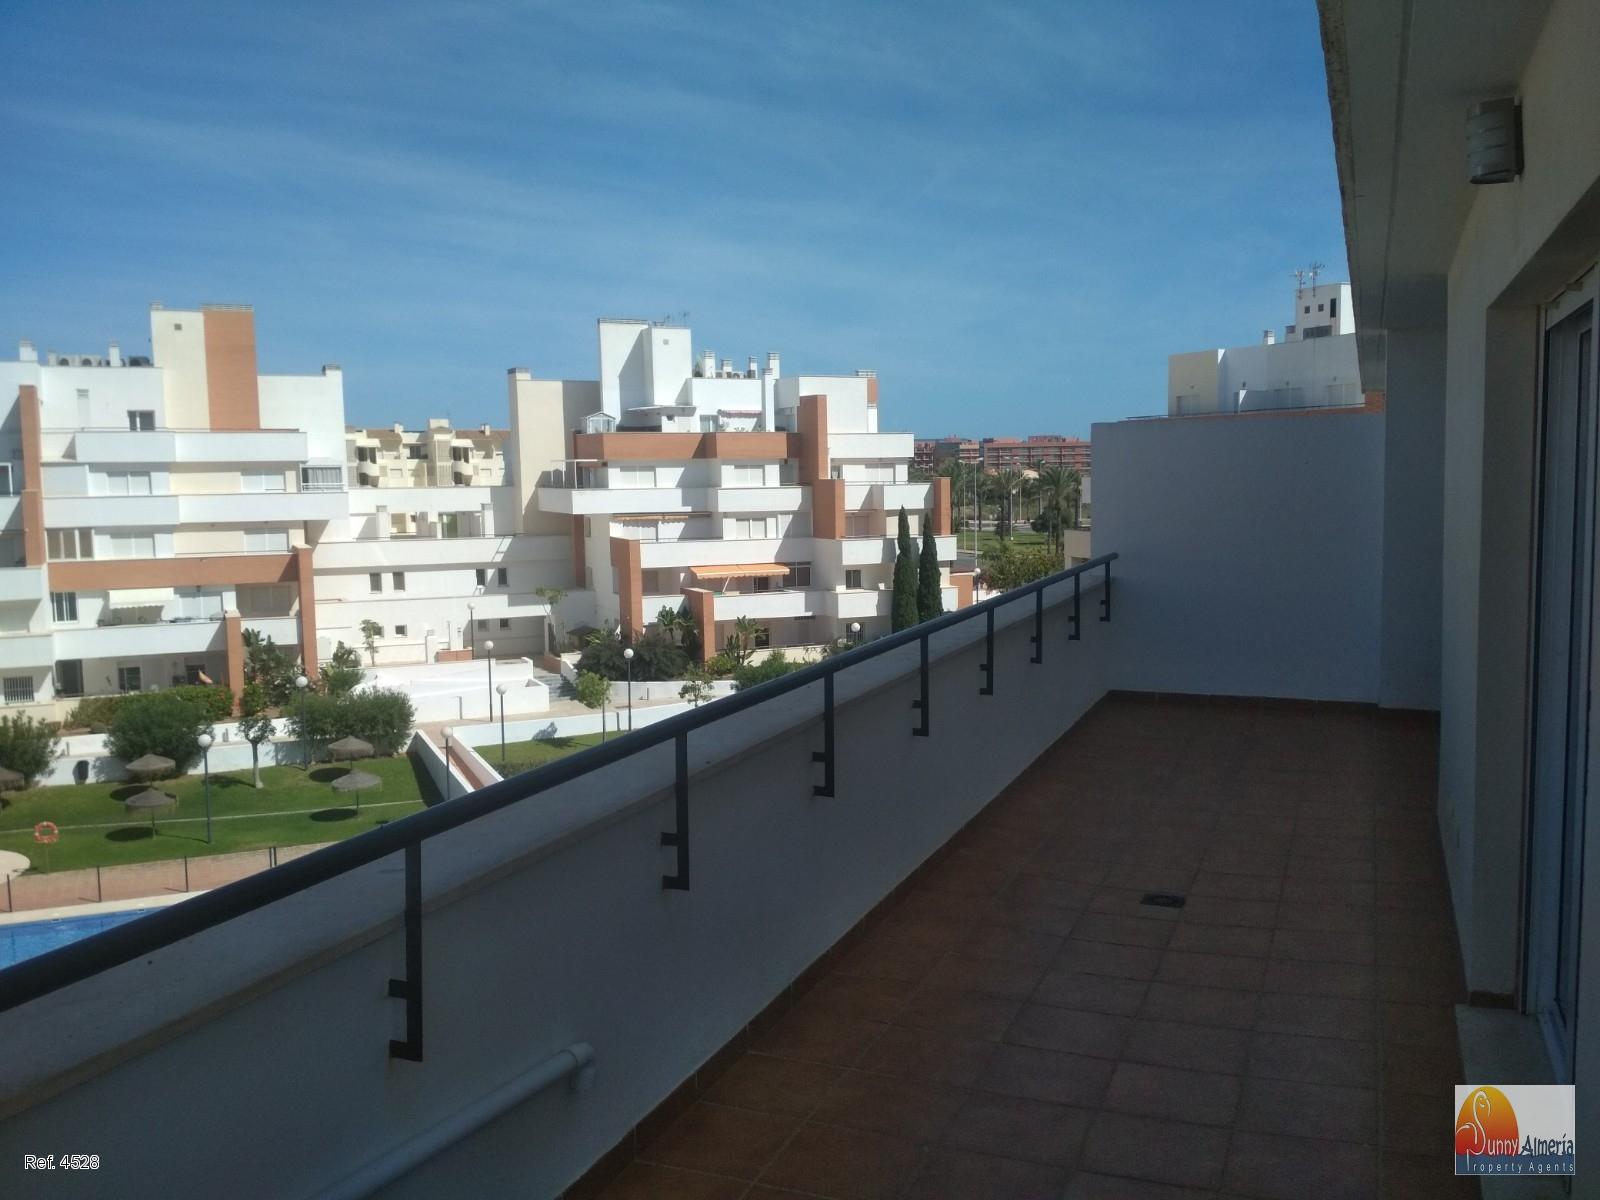 Luxury Apartment for rent in Carretera Ciudad de Cadiz 0 (Roquetas de Mar), 750 €/month